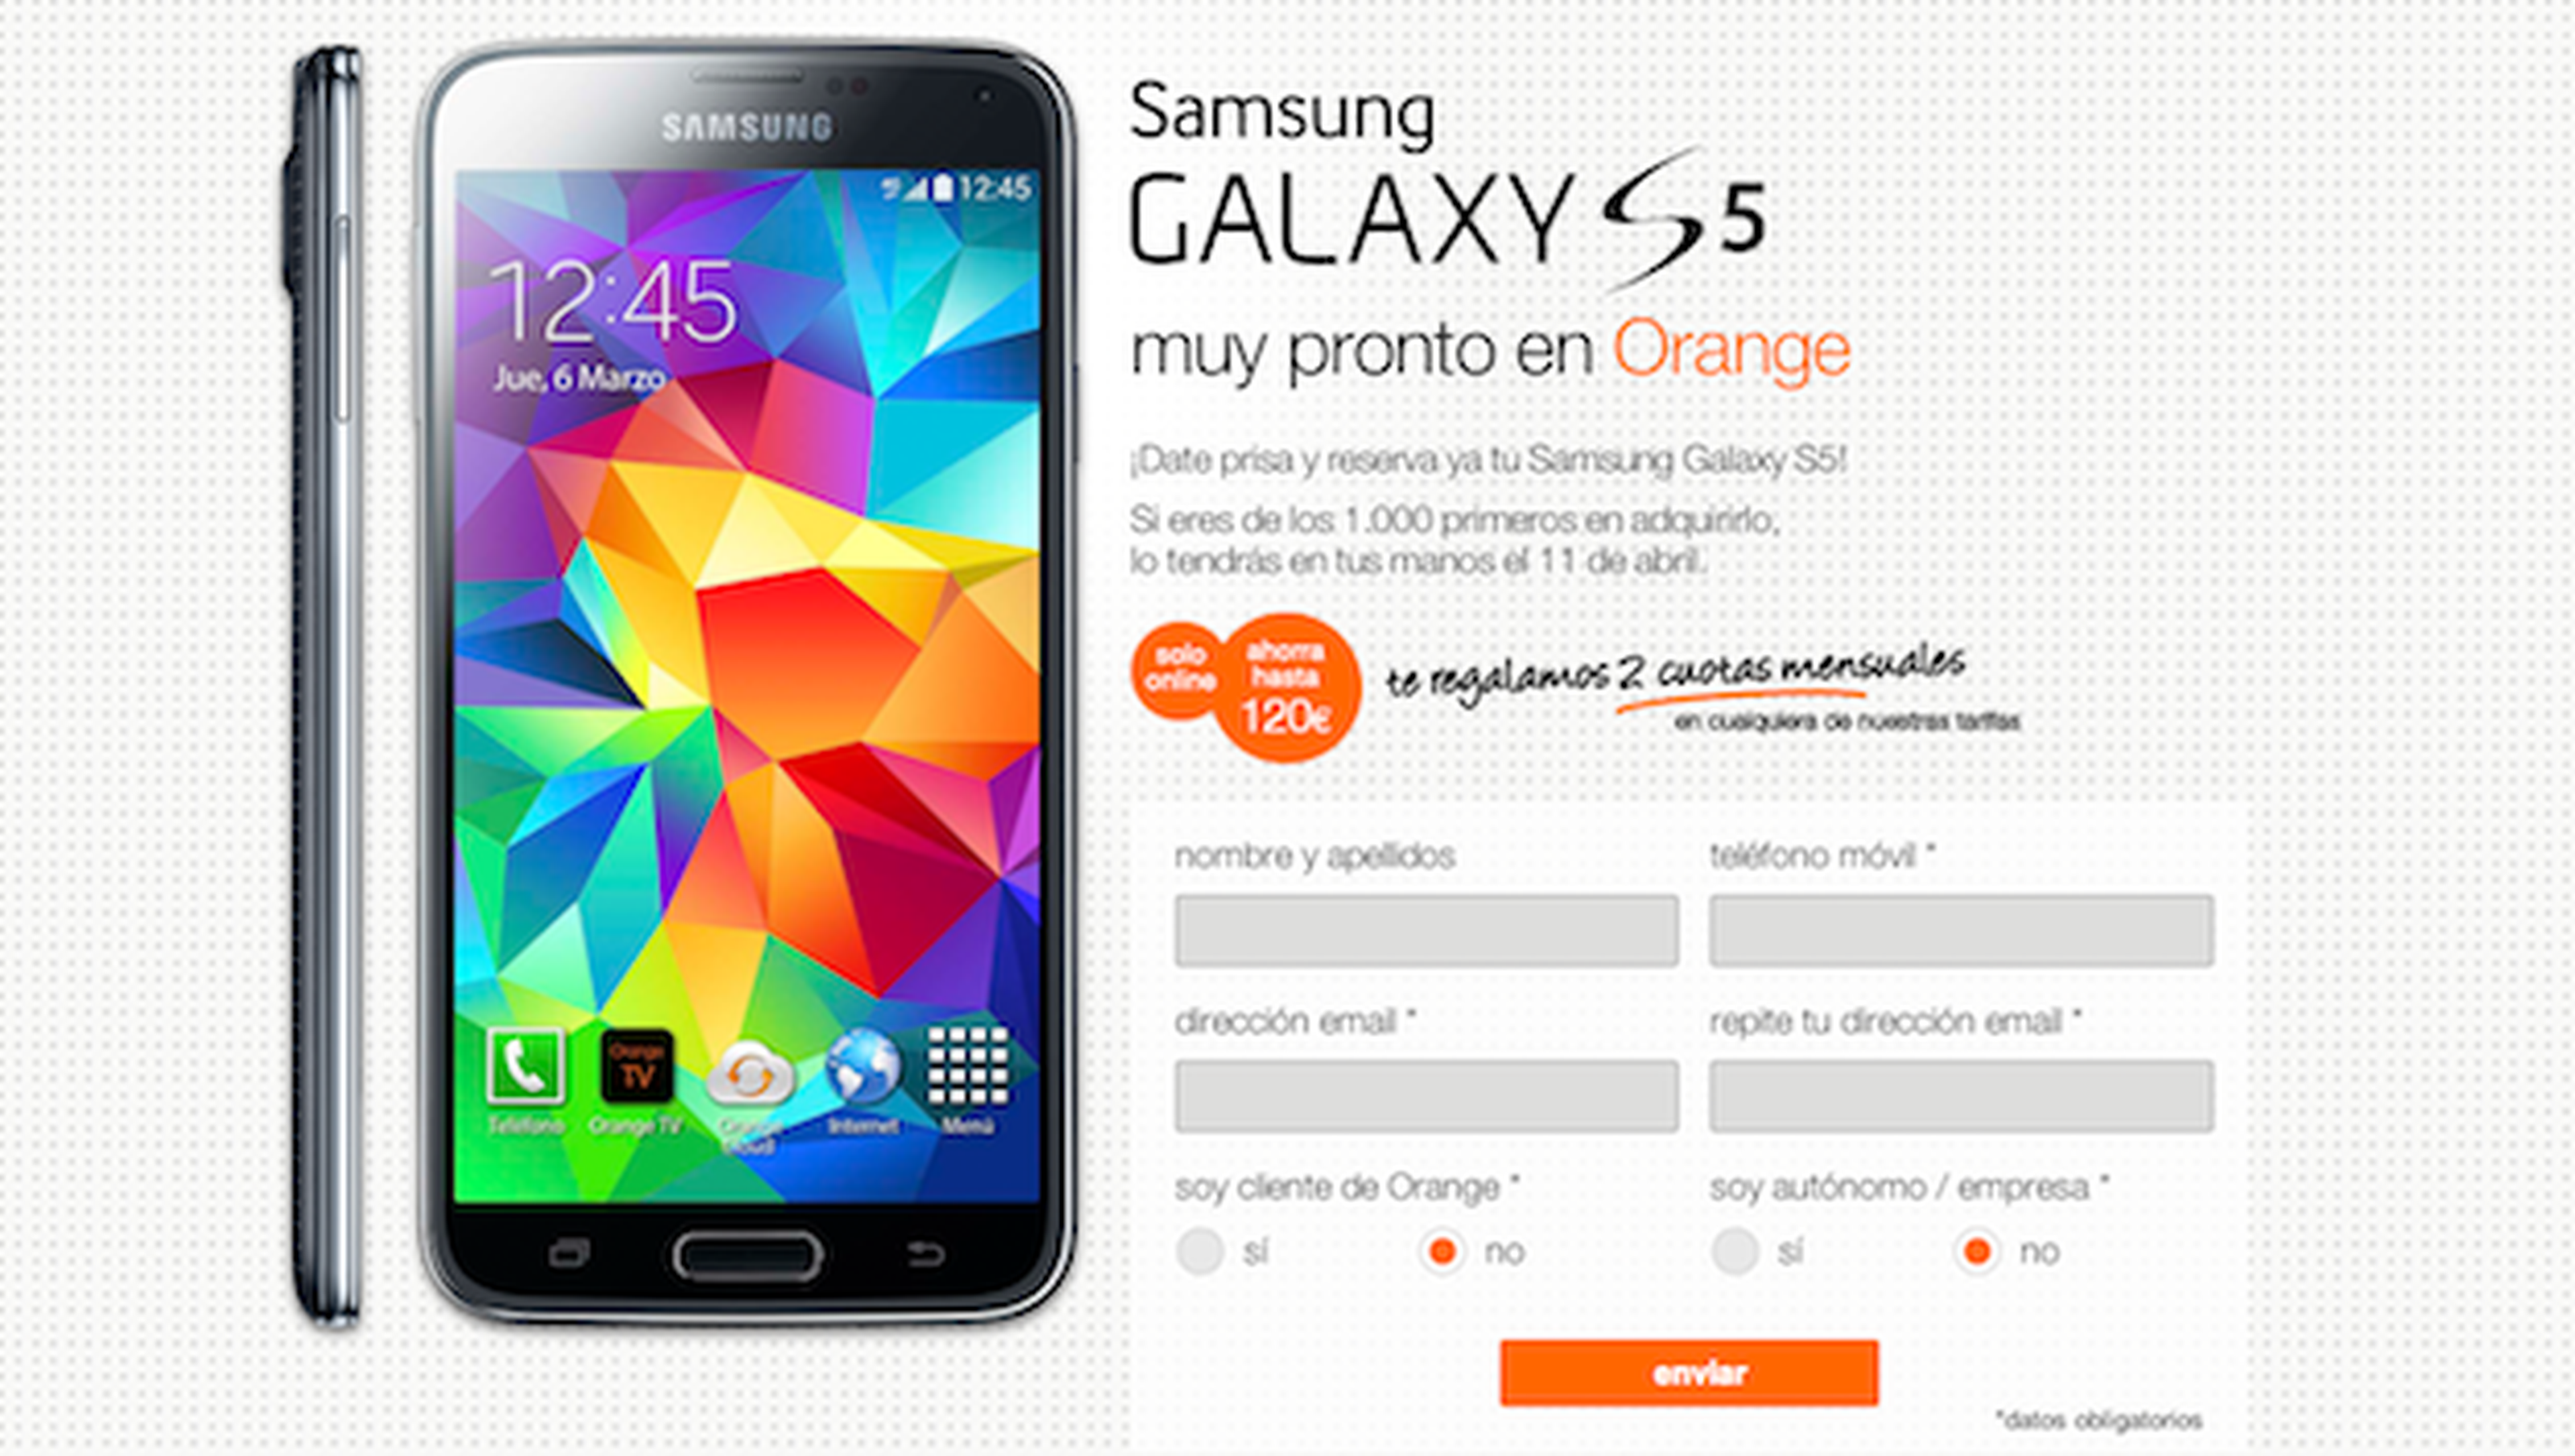 Samsung Galaxy S5 disponible en preventa con Orange